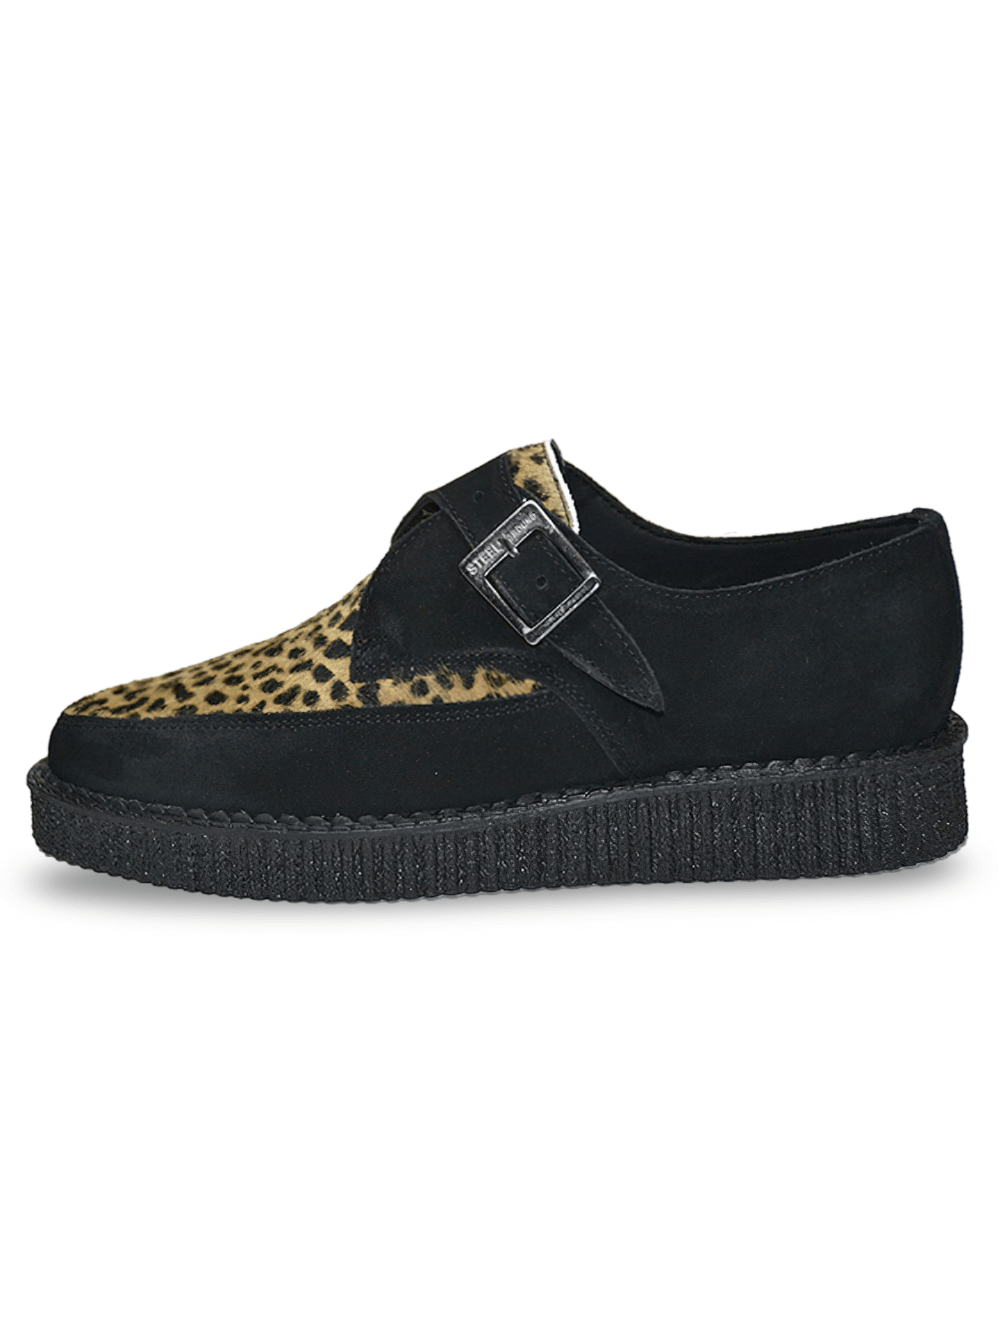 Zapatos creeper unisex con cordones en negro y leopardo